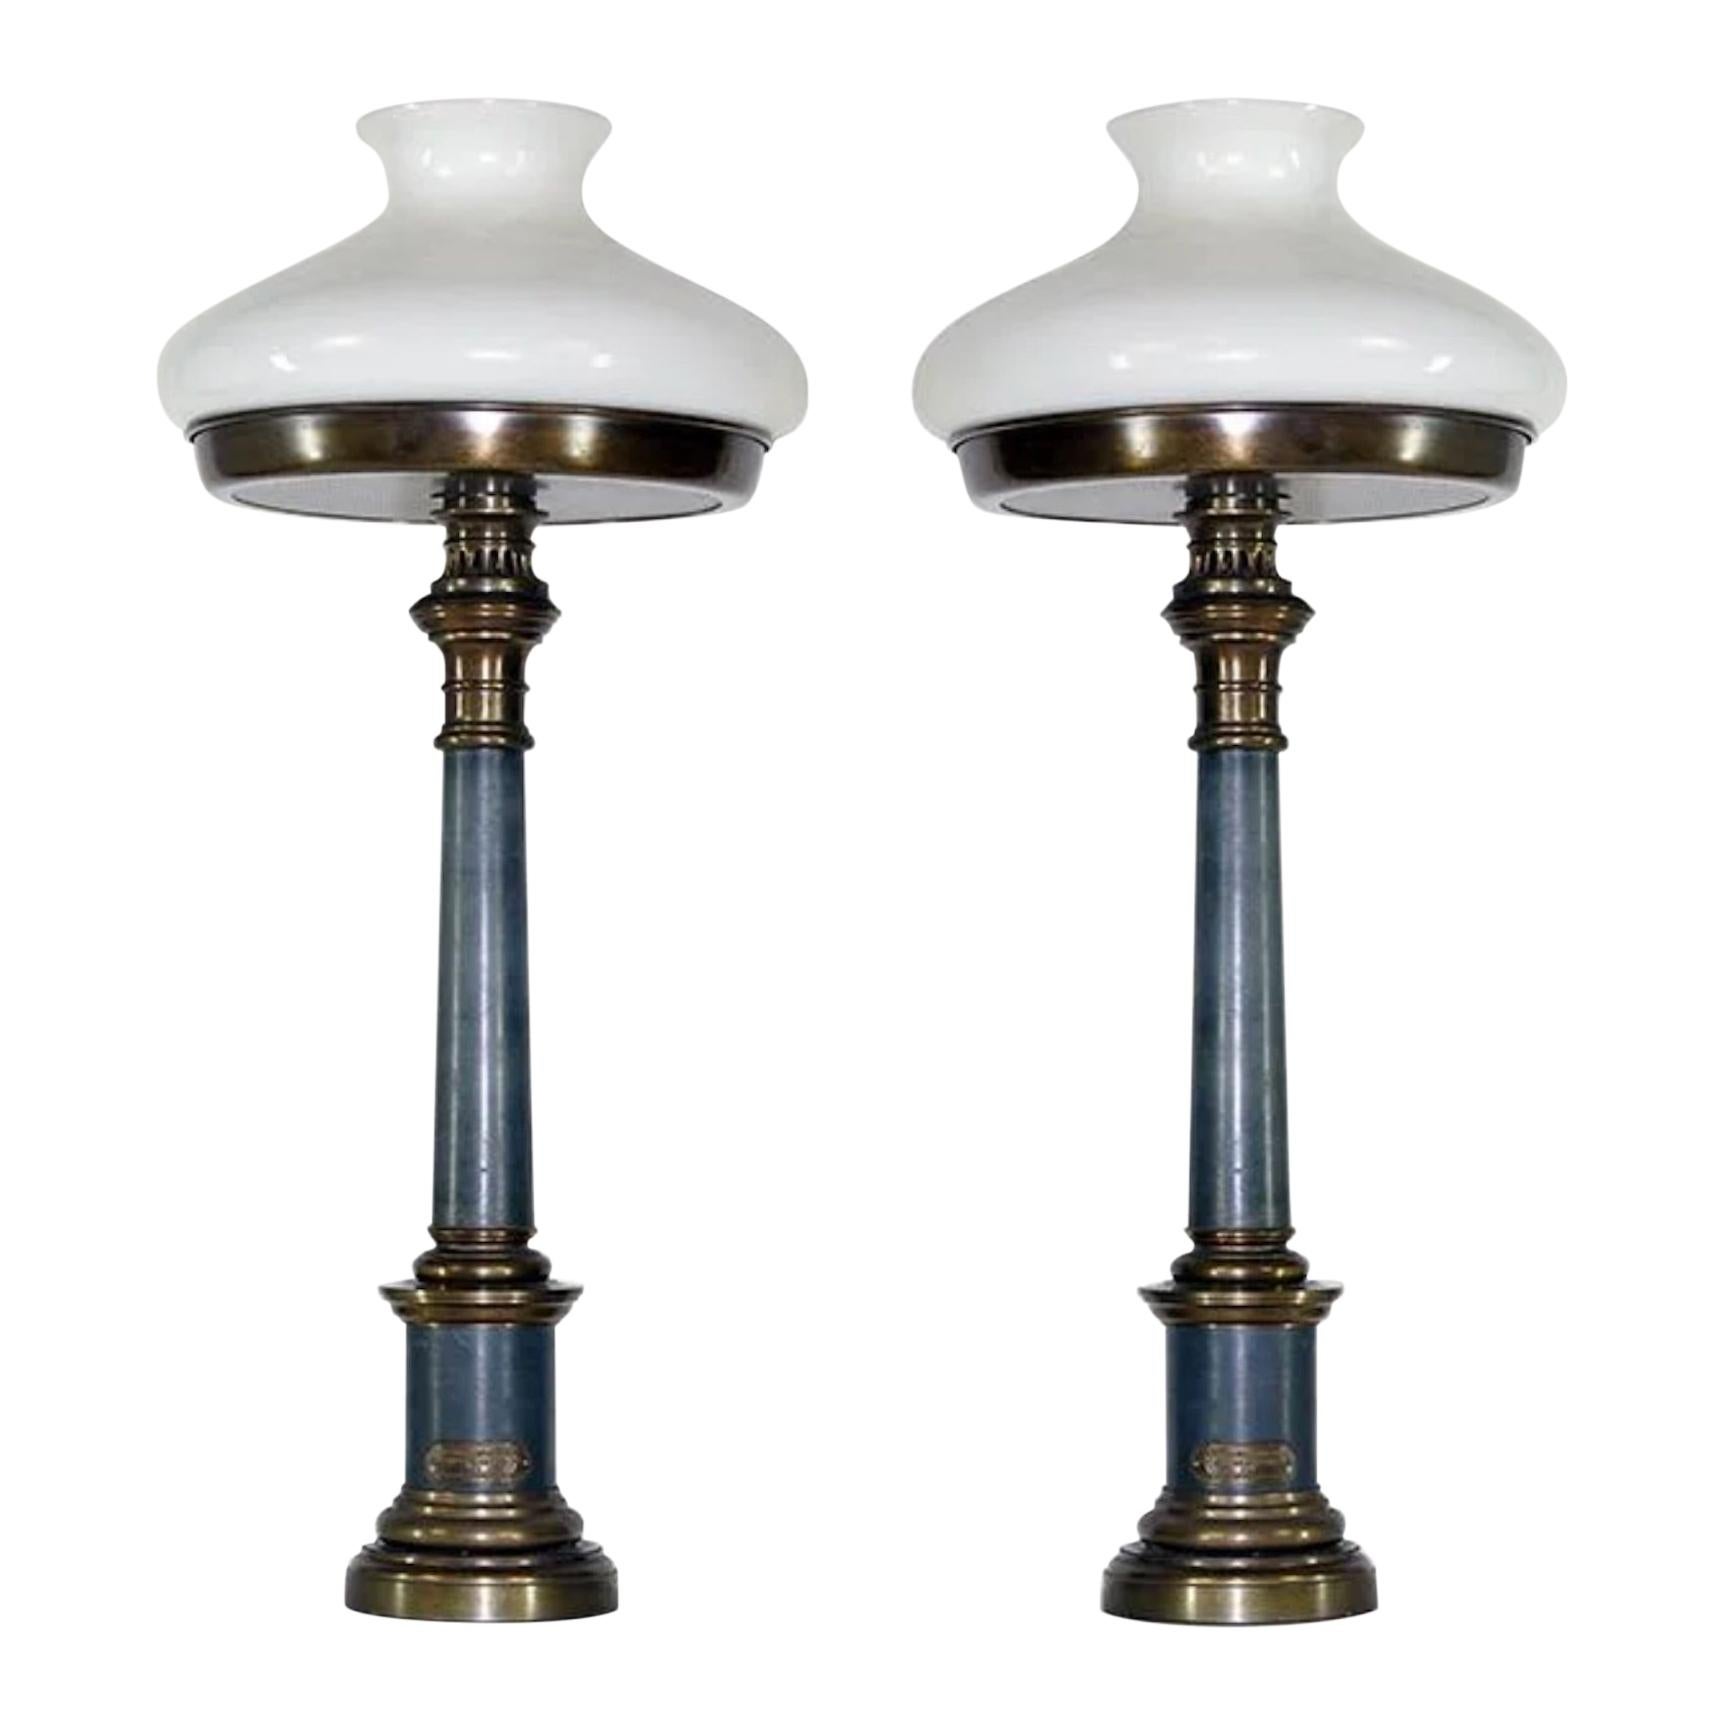 Paire de lampes de table bicolores du 19ème siècle:: facilement convertibles pour utiliser un abat-jour en soie